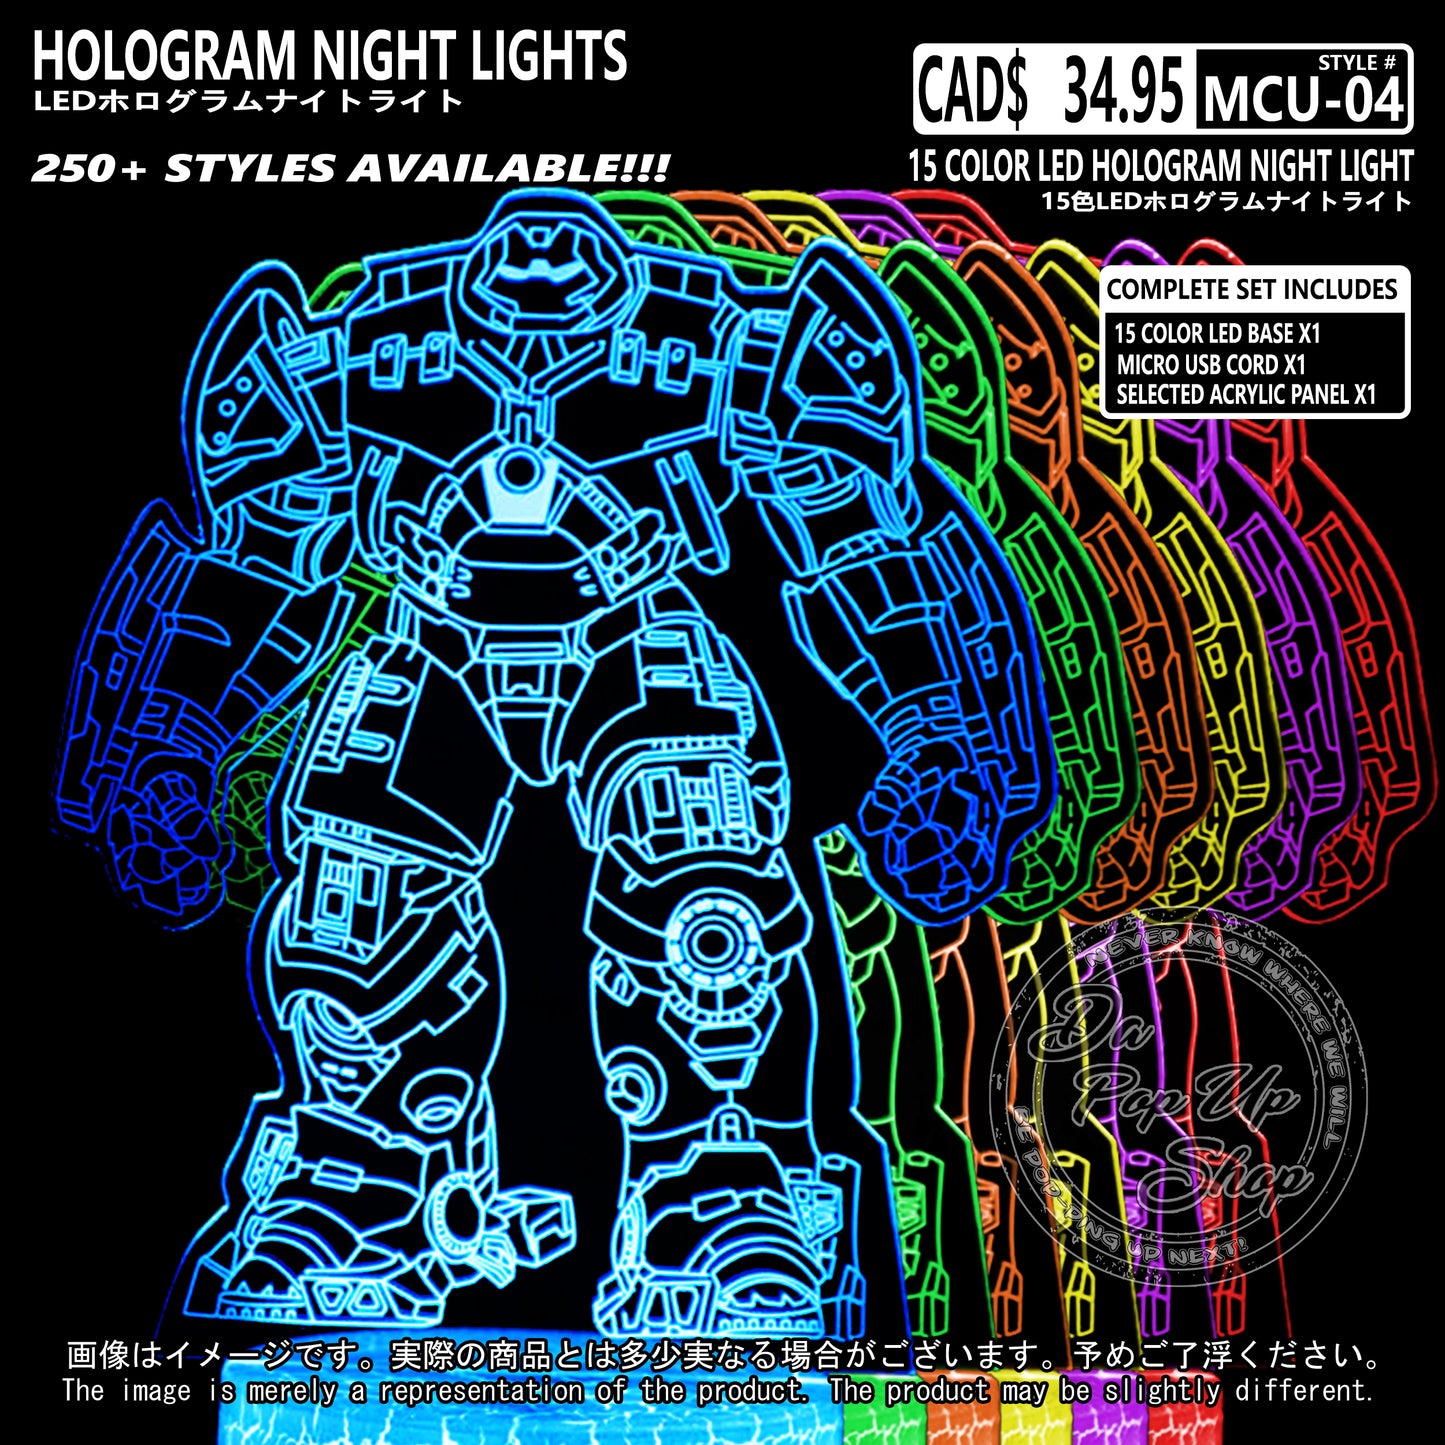 (MCU-04) MCU Marvel Cinematic Universal Hologram LED Night Light